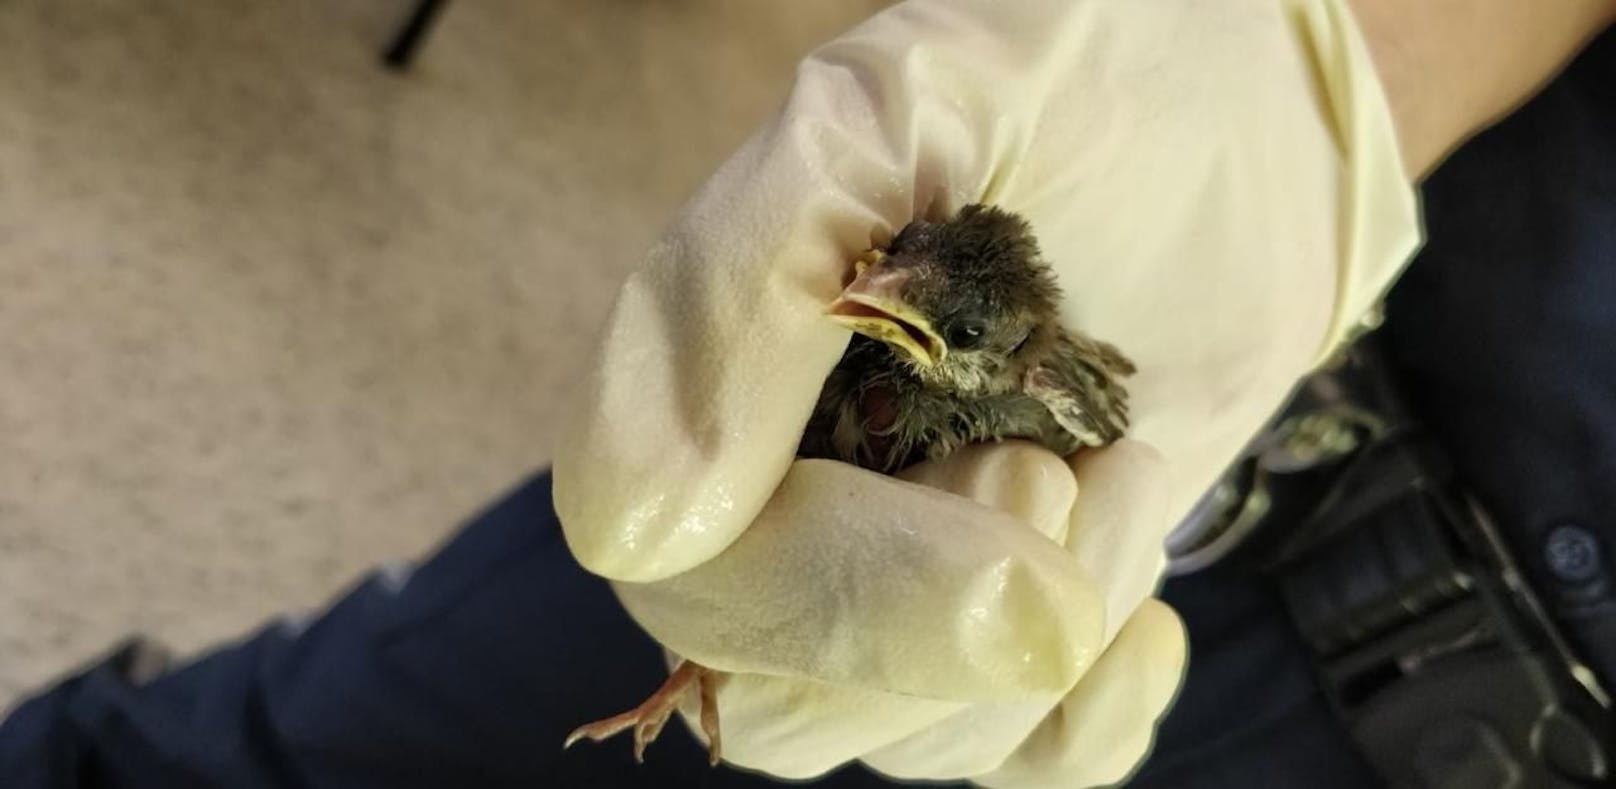 Vogel-Baby fiel aus Nest, Passanten retteten es